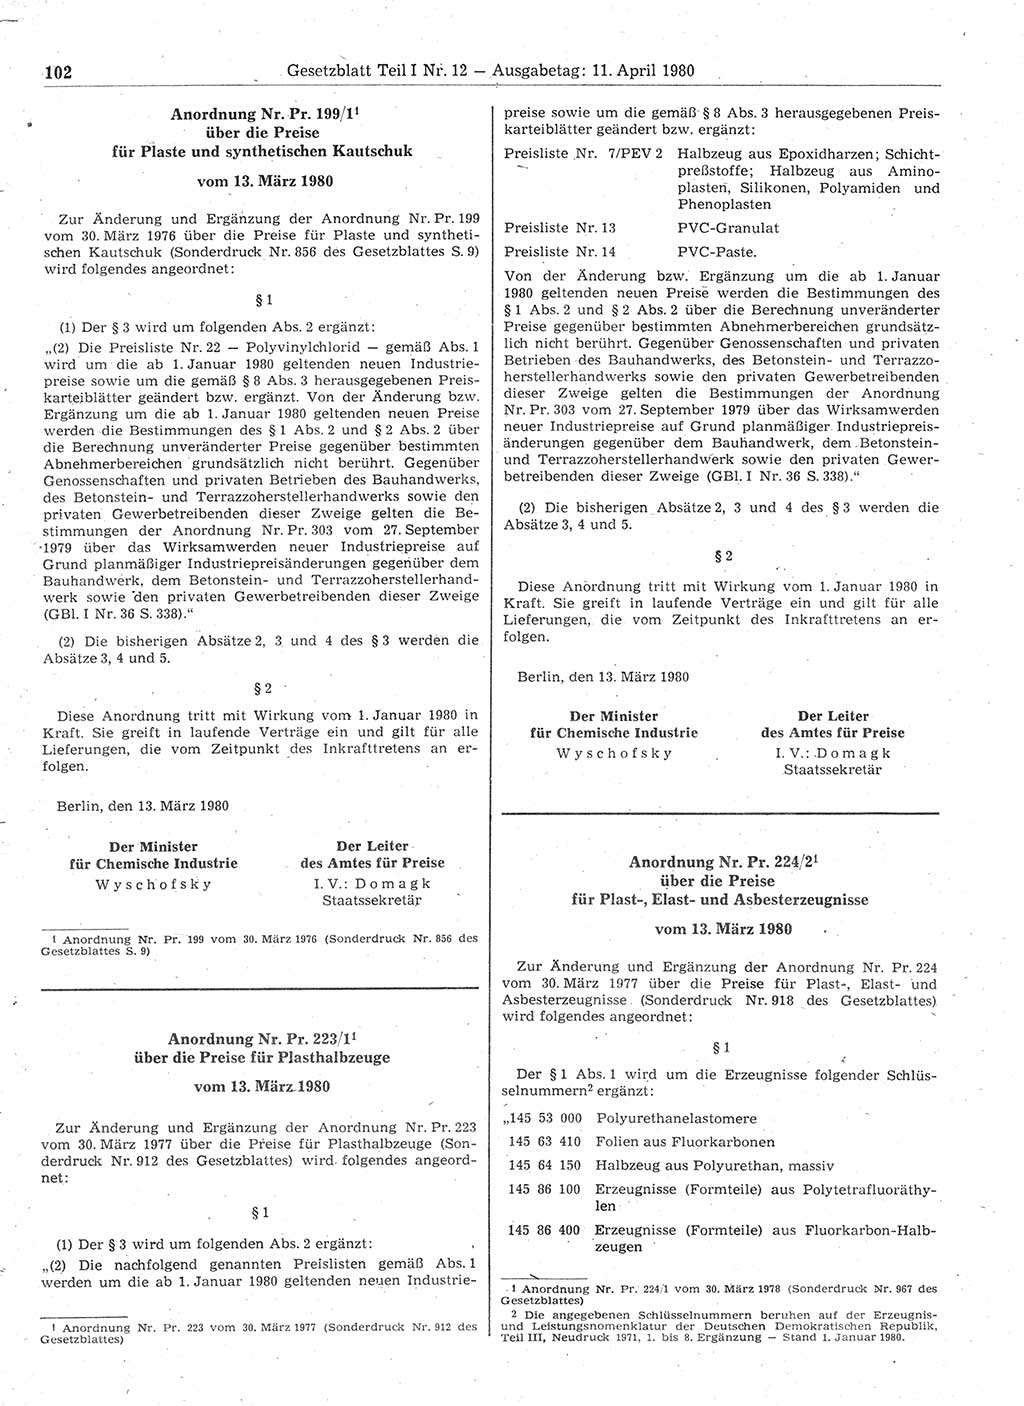 Gesetzblatt (GBl.) der Deutschen Demokratischen Republik (DDR) Teil Ⅰ 1980, Seite 102 (GBl. DDR Ⅰ 1980, S. 102)